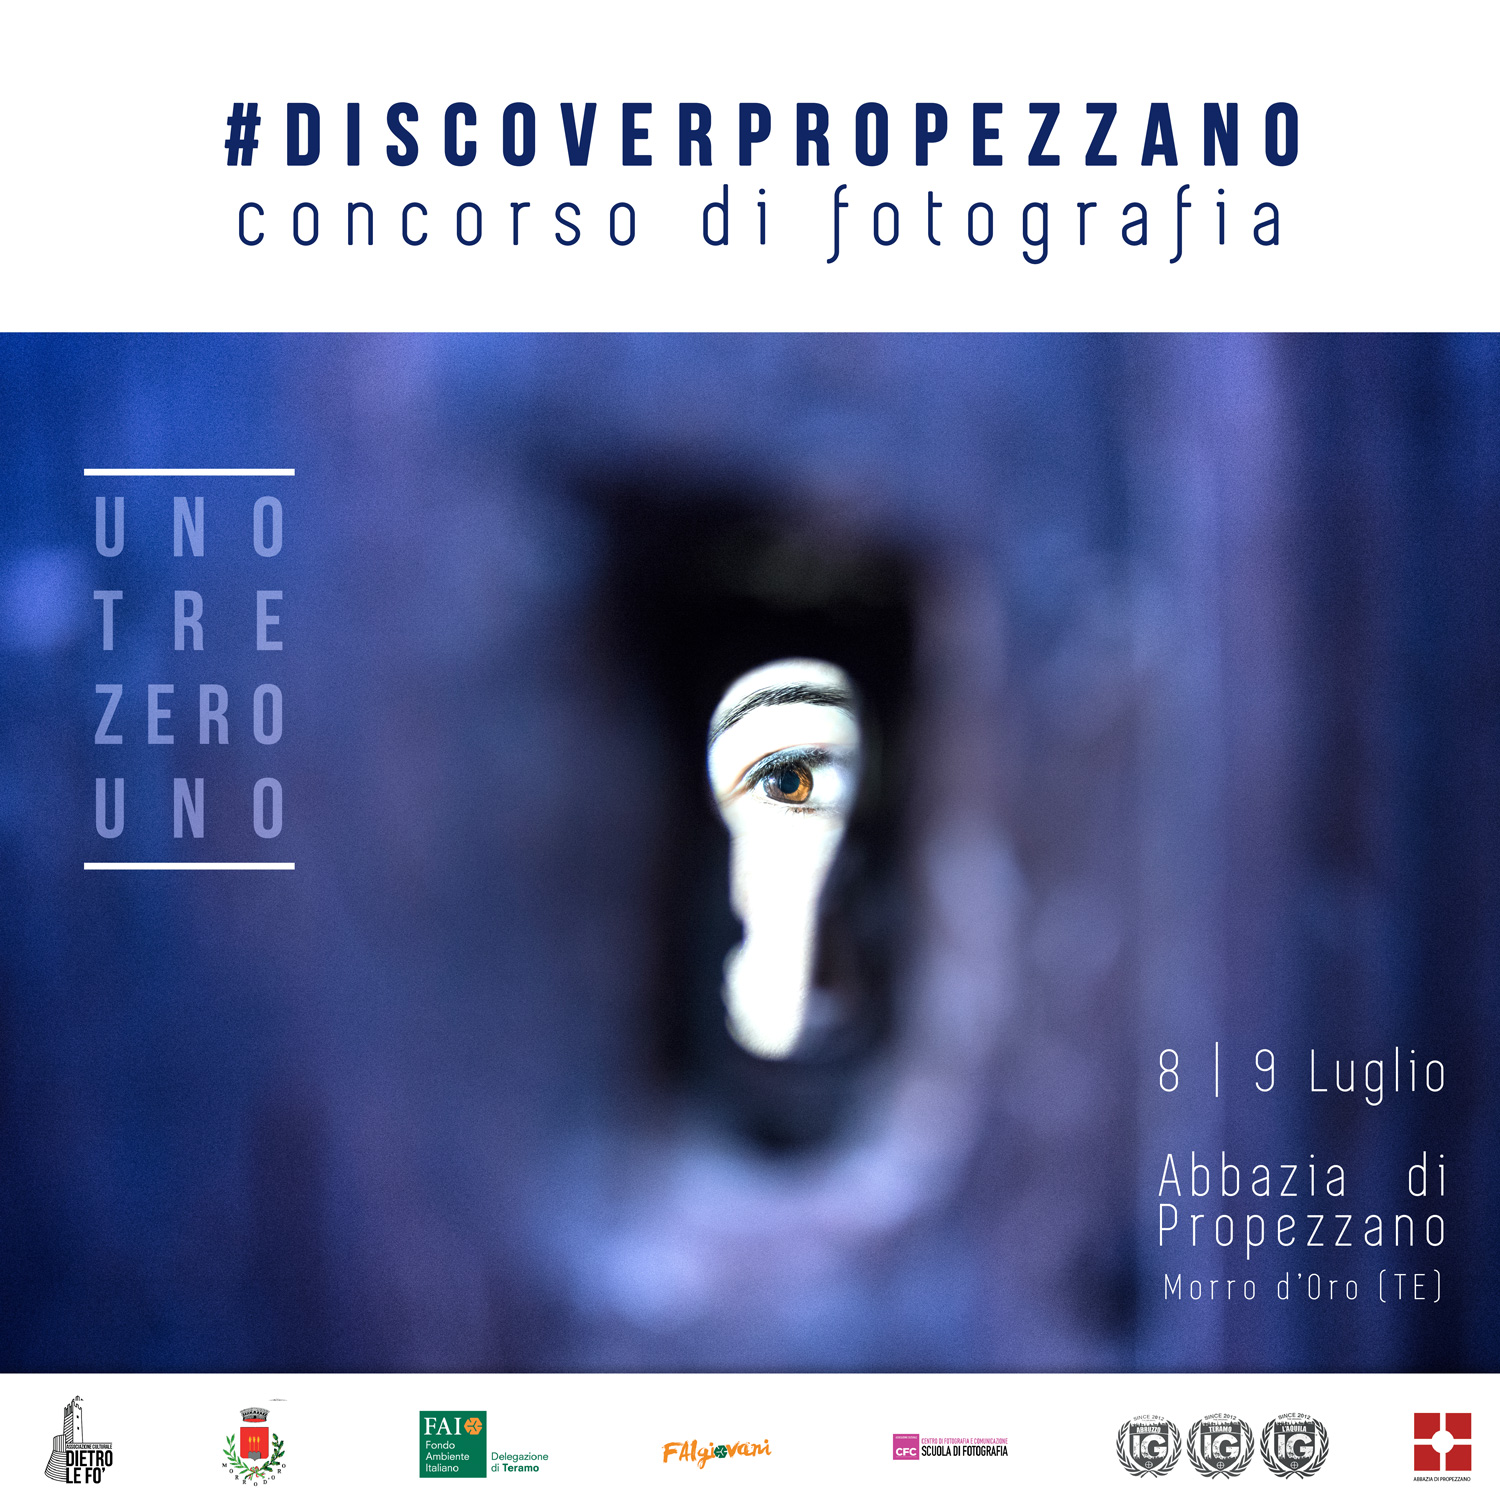 Discover Propezzano